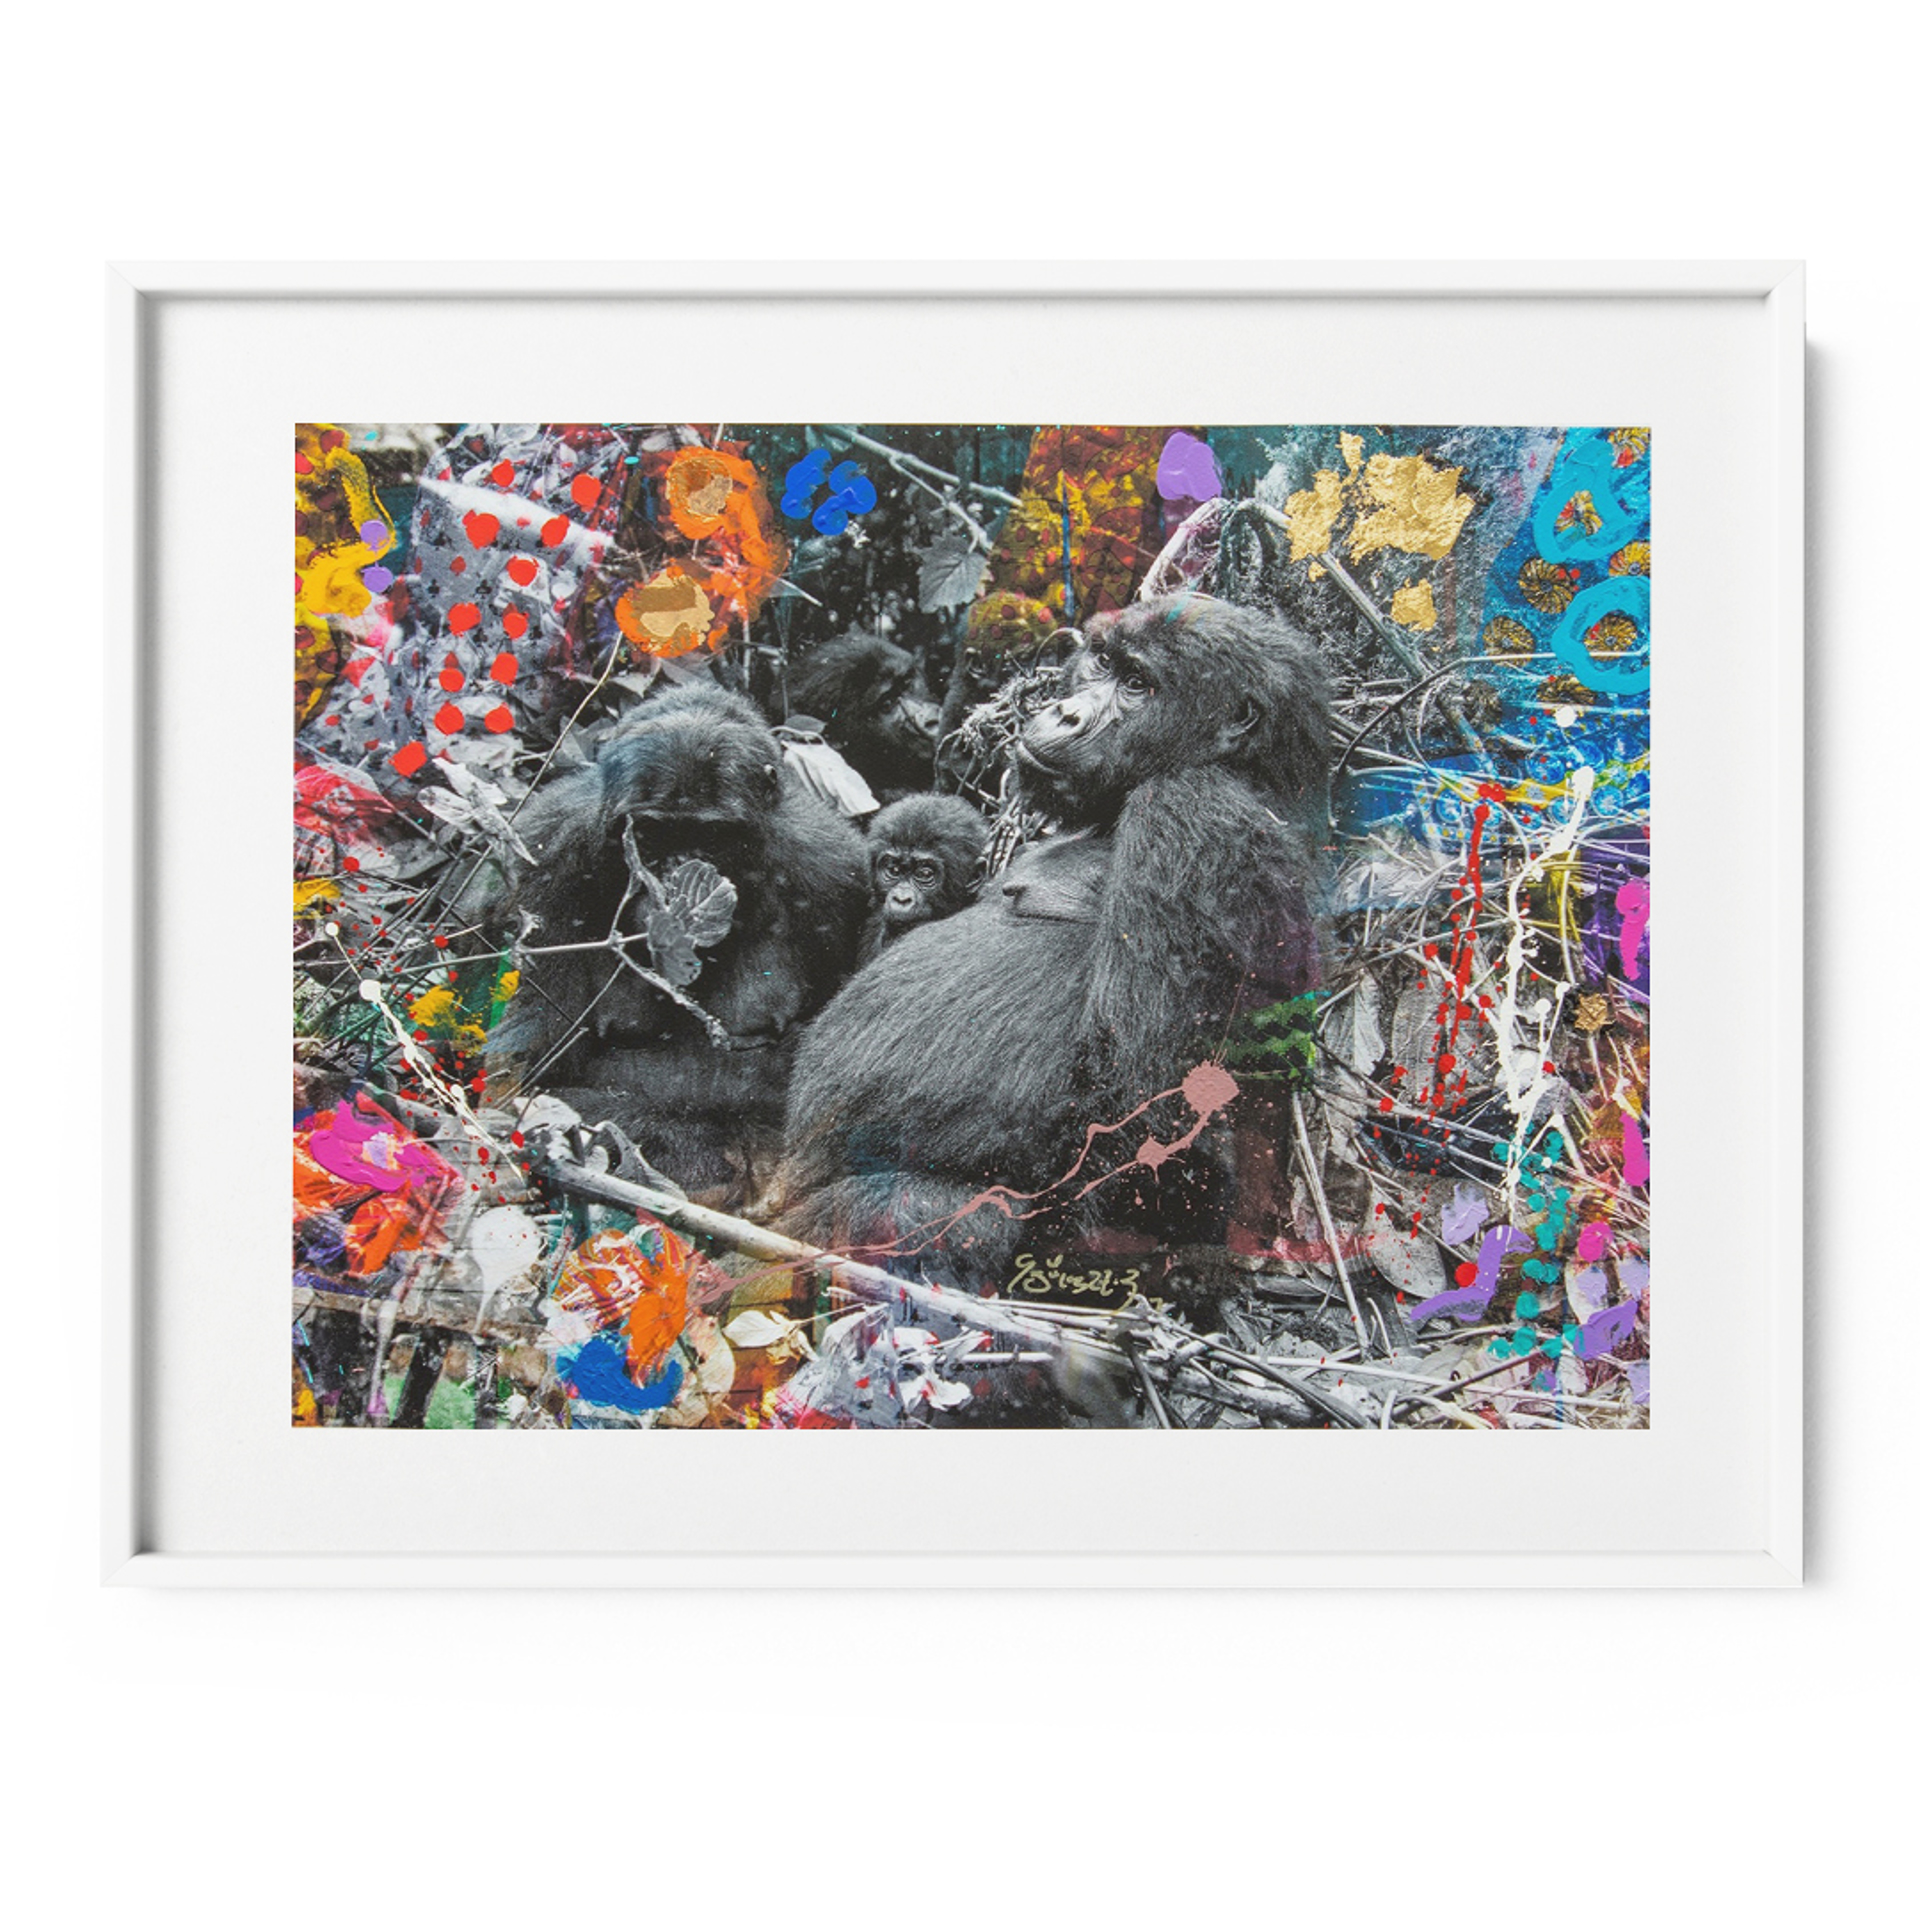 Gorilla Family by Arno Elias